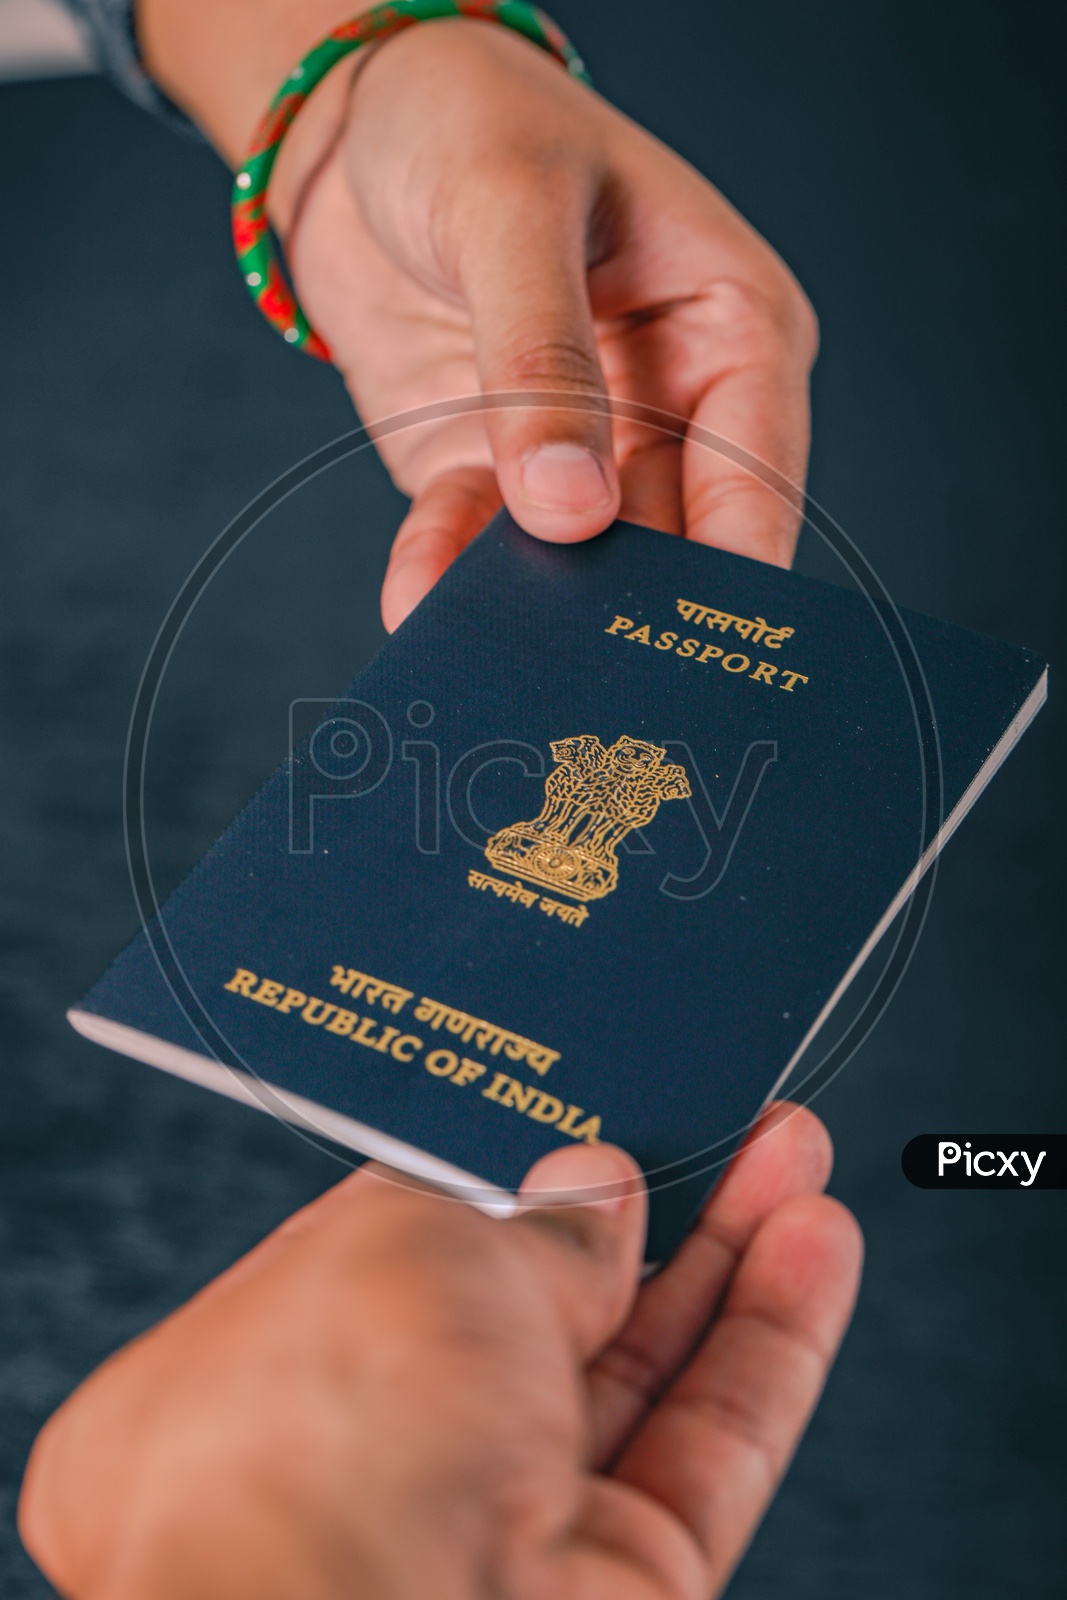 Indian Passport In Hands Closeup  , Showing Passport